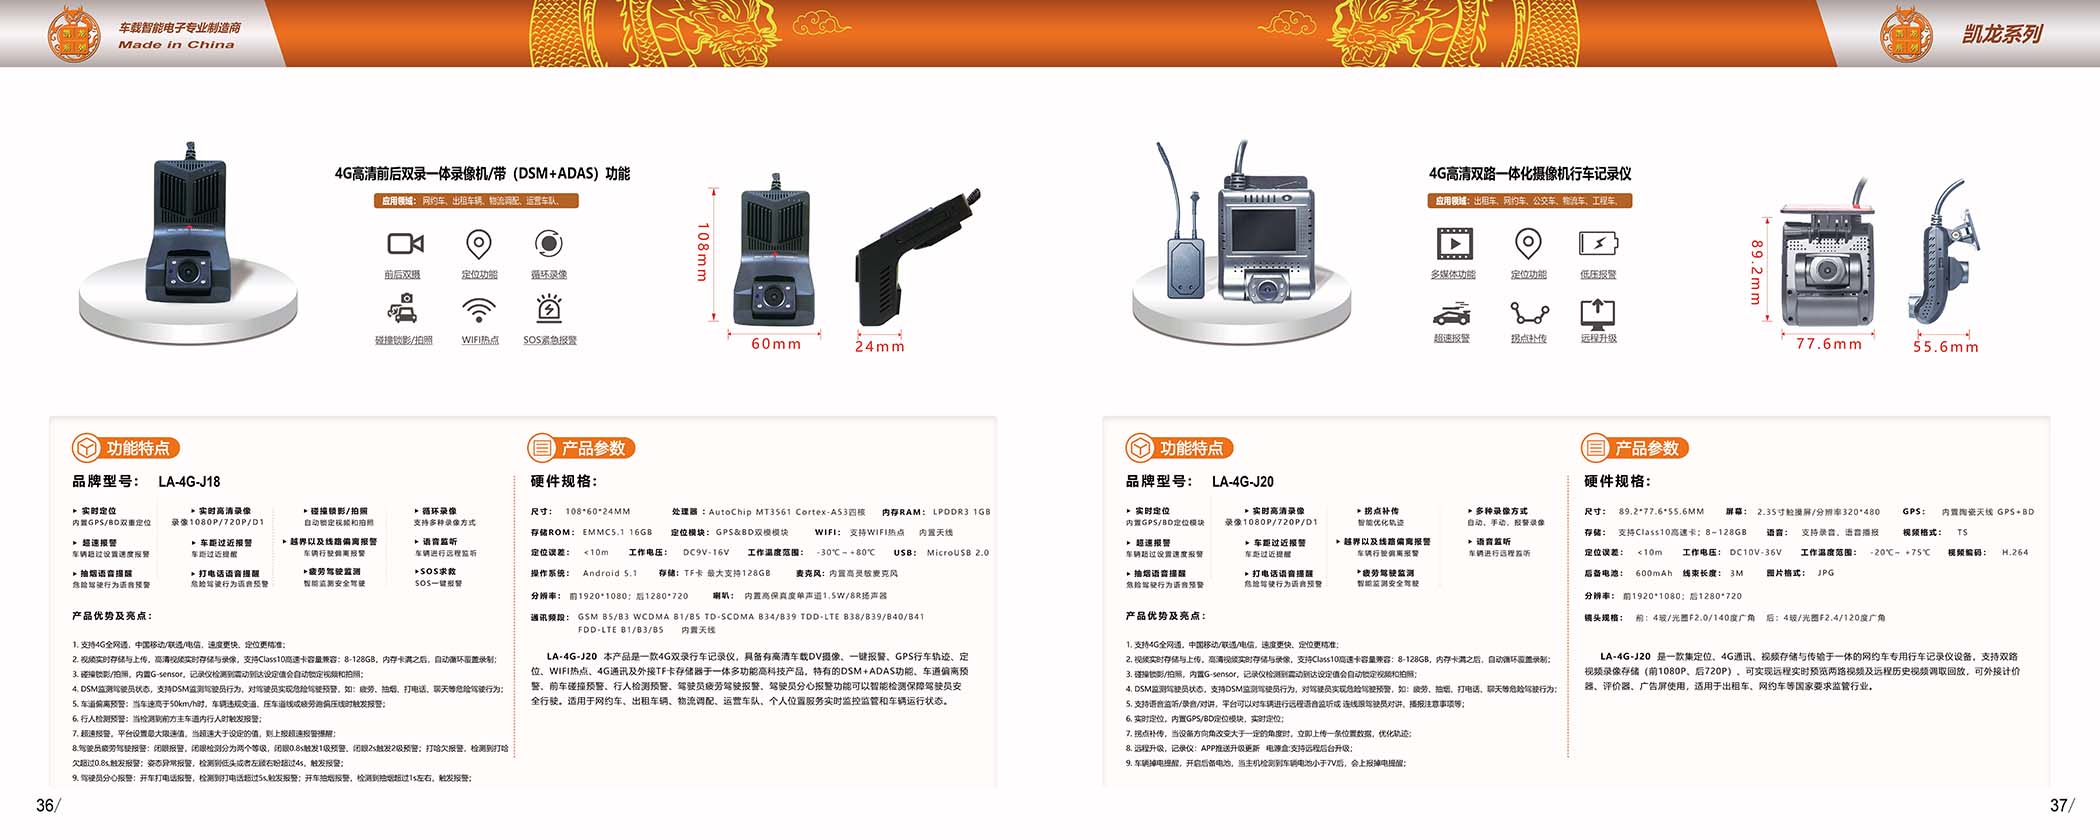 龙安天下电子-产品宣传画册(图15)